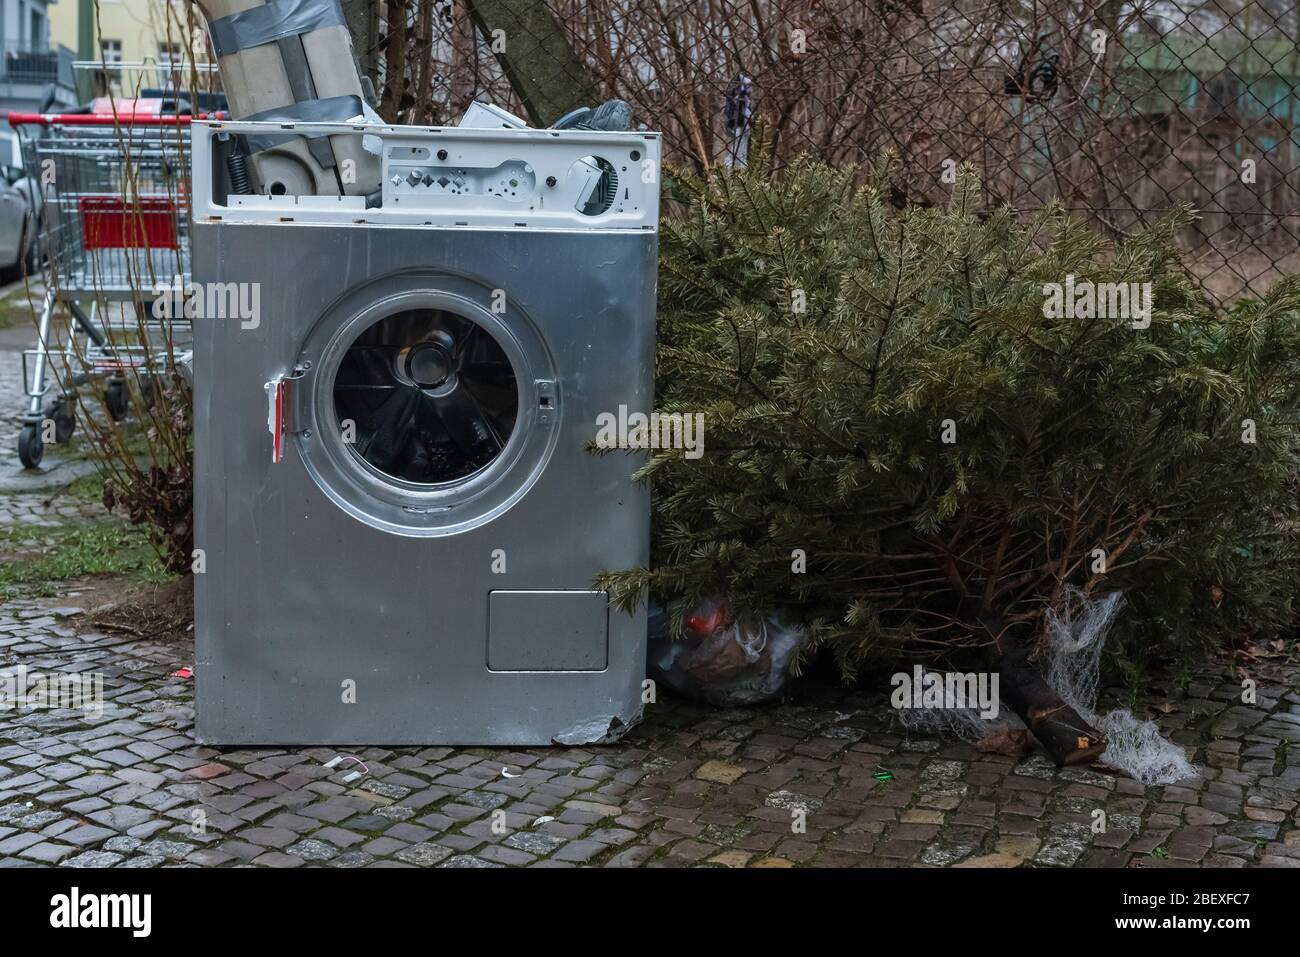 Alte Waschmaschine steht auf dem Bürgersteig, Müll auf der Straße,  Hausmüll, Sperrmüll auf der Straße Stockfotografie - Alamy